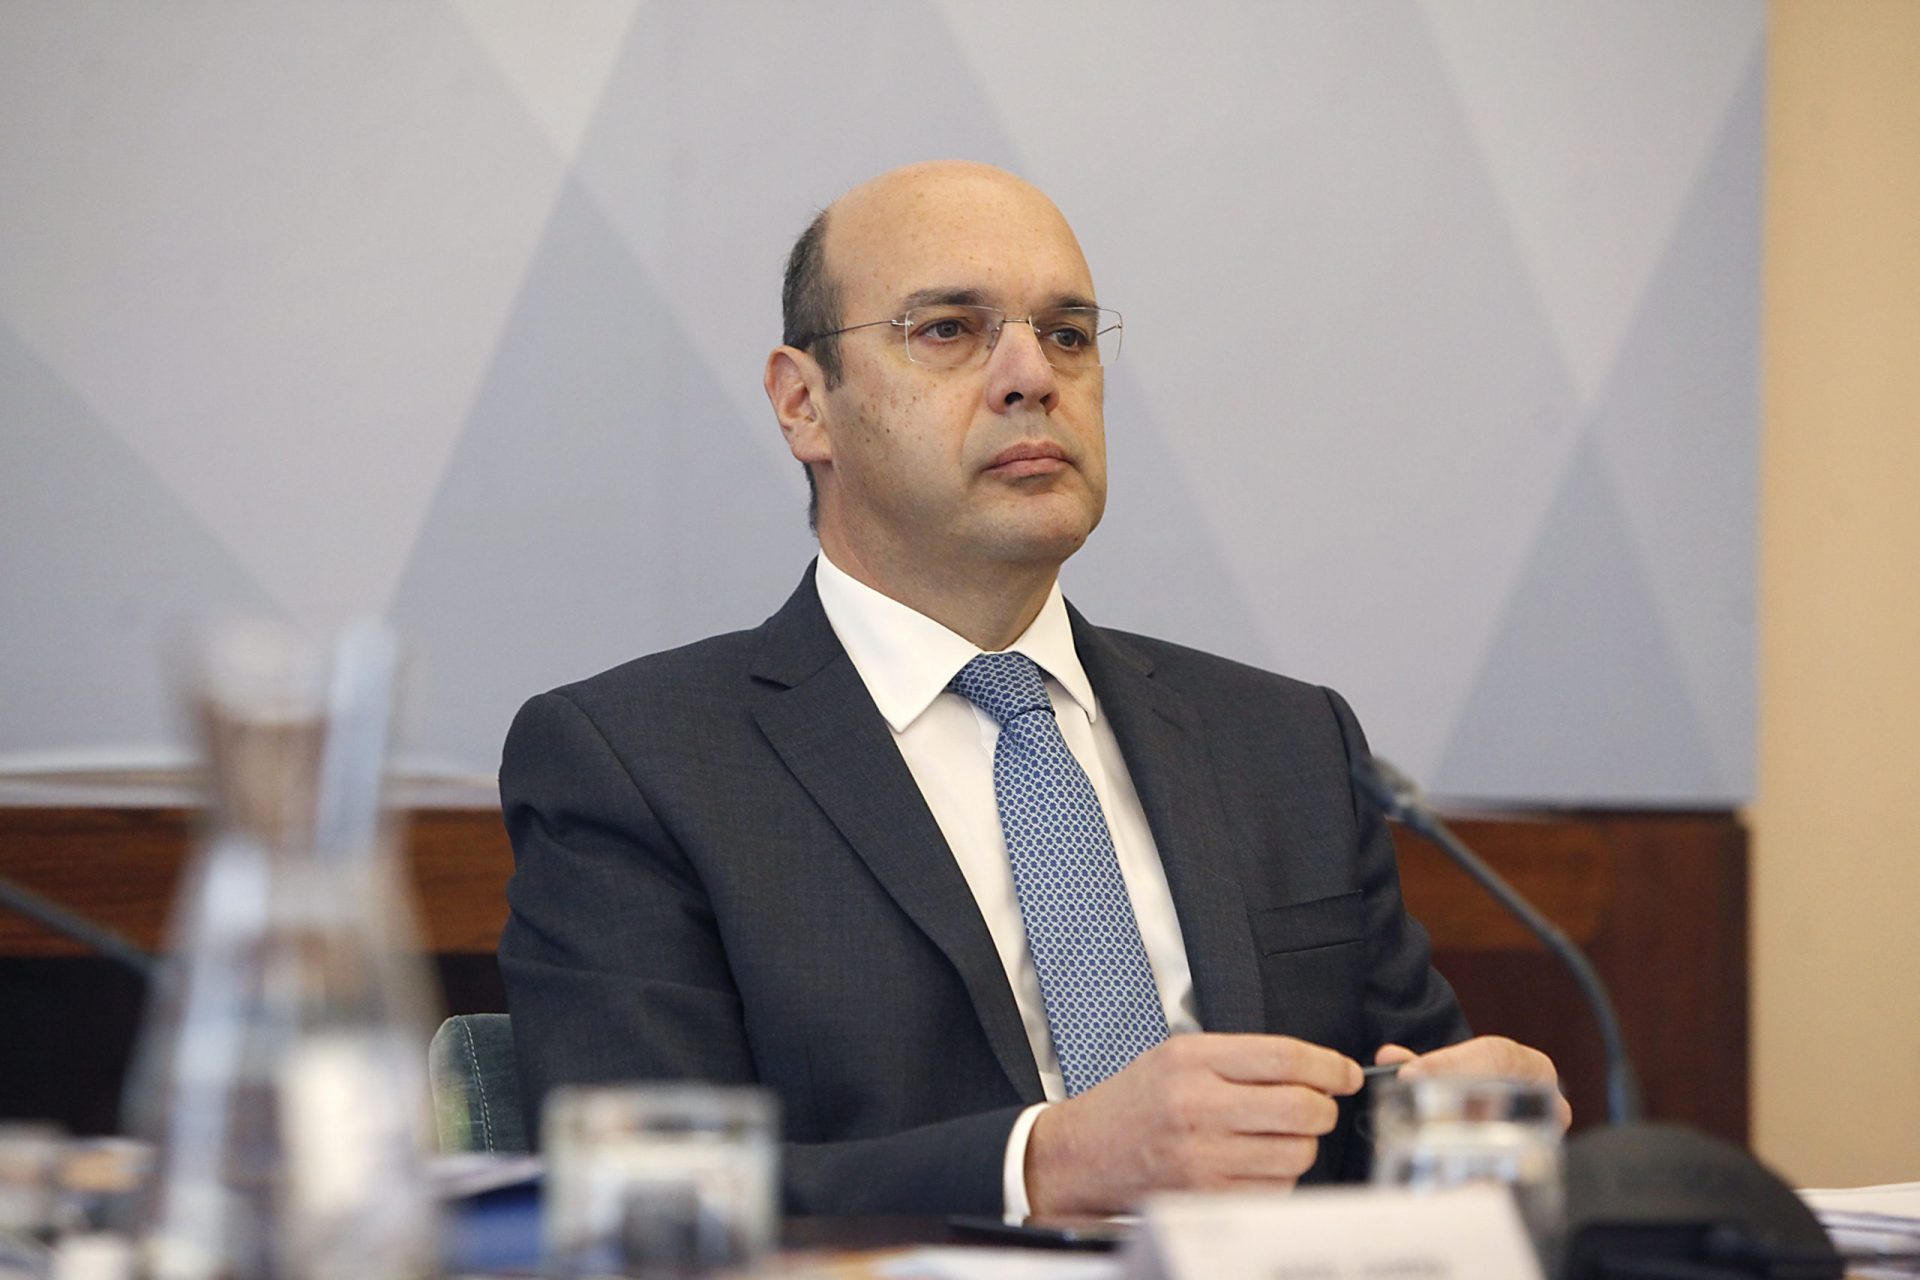 Ministro da Economia não acredita que Portugal irá fechar novamente devido à covid-19